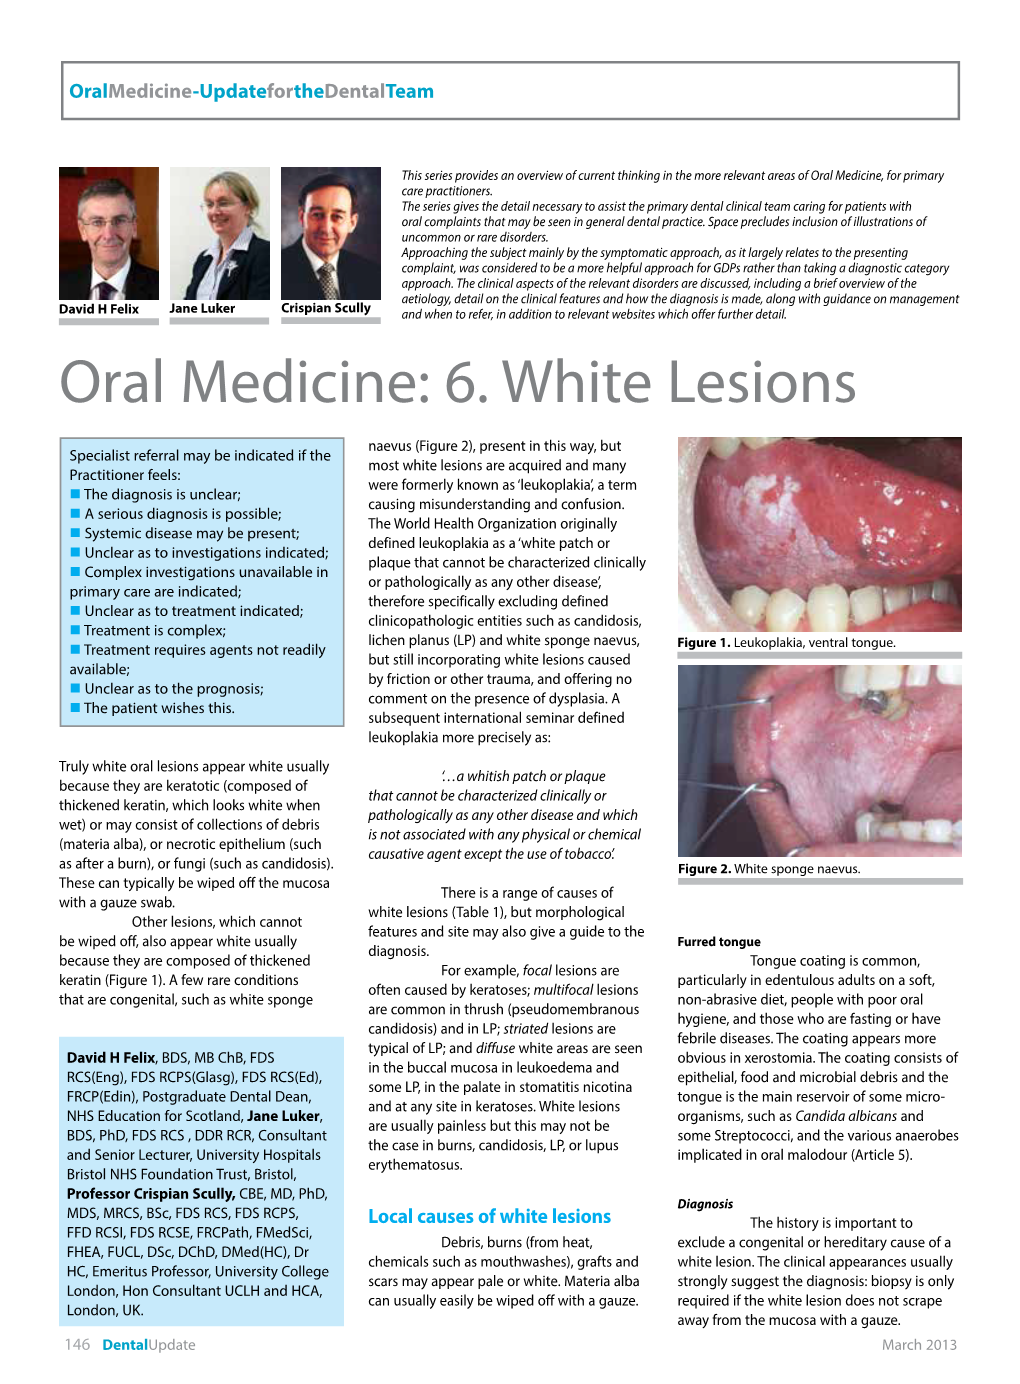 Oral Medicine: 6. White Lesions